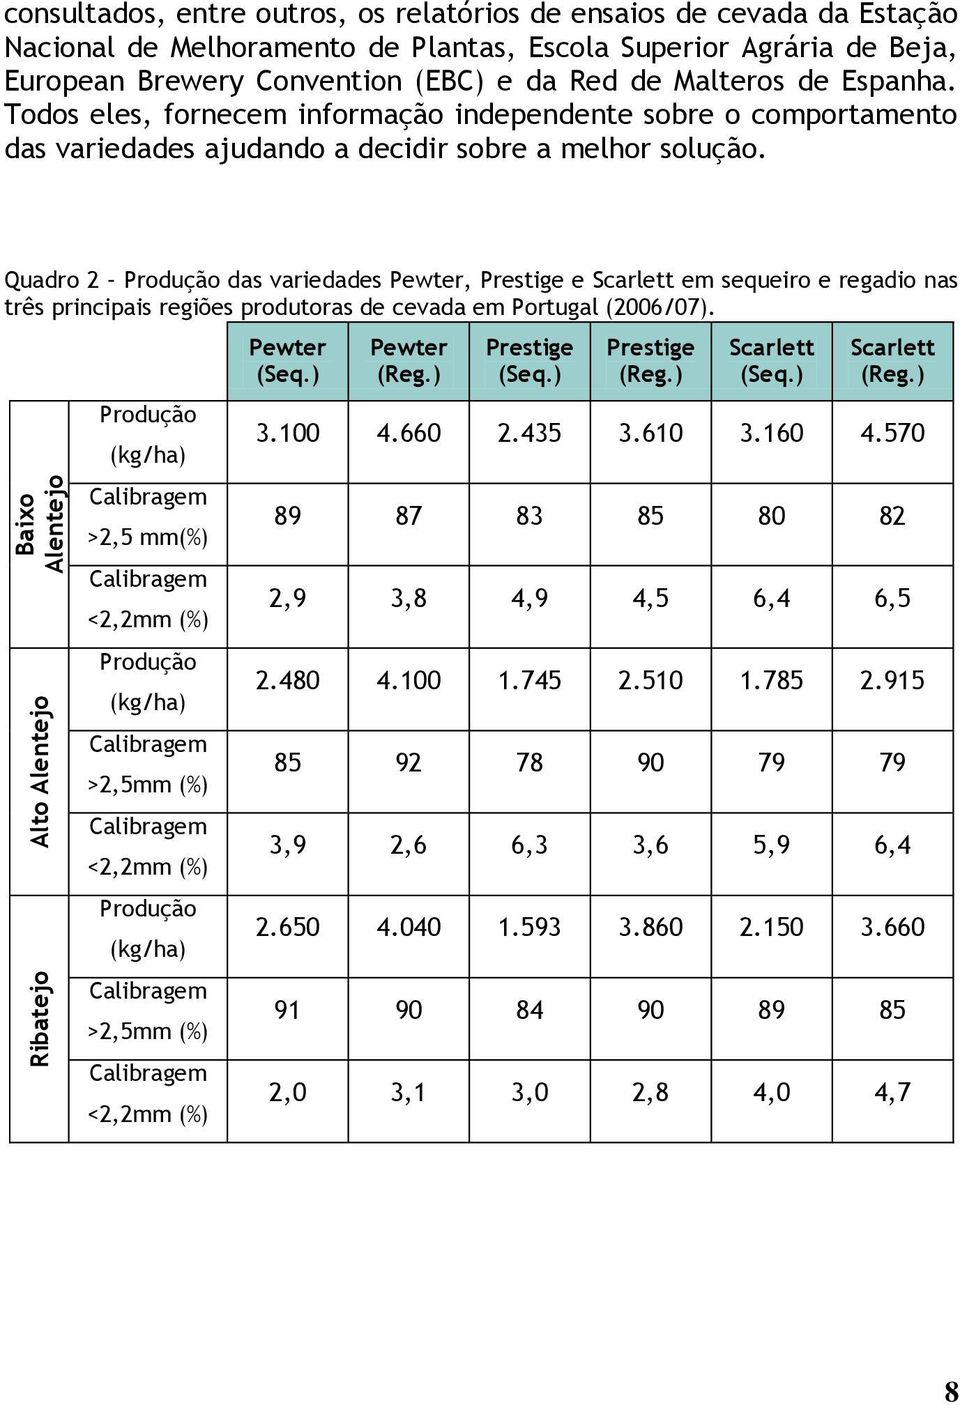 Quadro 2 Produção das variedades Pewter, Prestige e Scarlett em sequeiro e regadio nas três principais regiões produtoras de cevada em Portugal (2006/07).